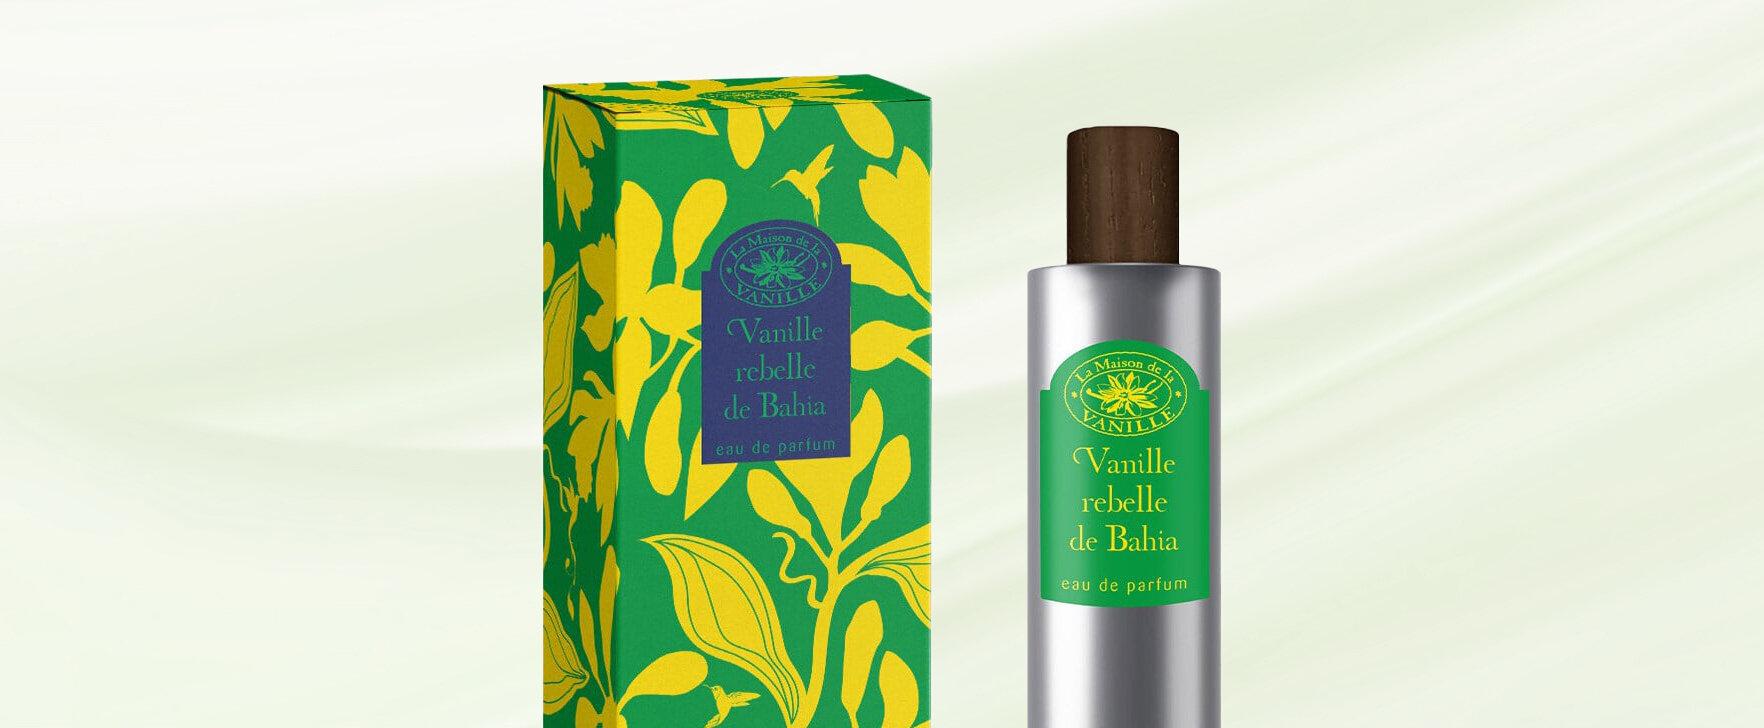 The New Eau de Parfum Vanille Rebelle de Bahia by la Maison de la Vanille: An Ode to Freedom